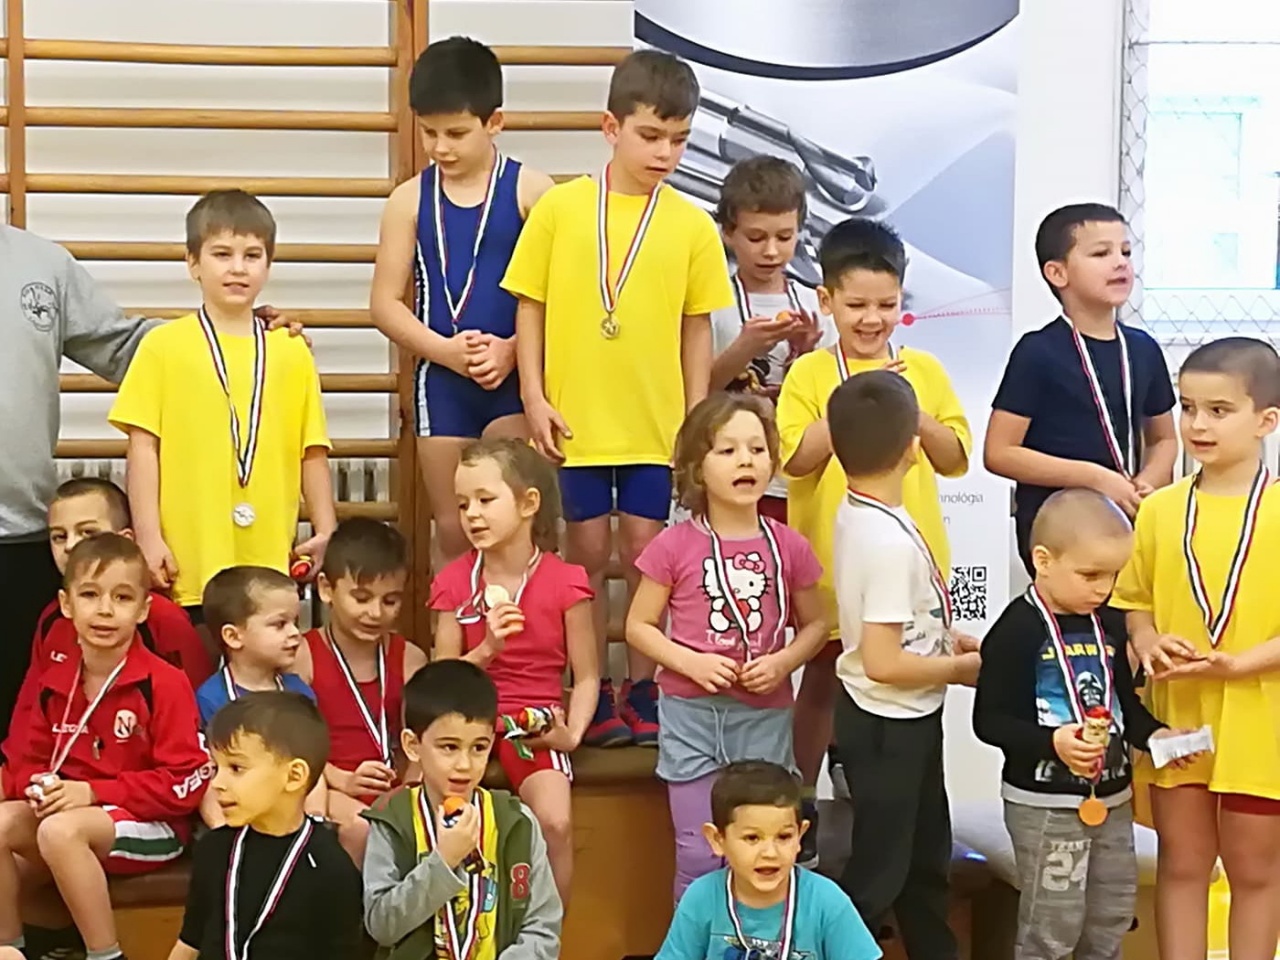 Mikulás Kupa - Sárospatakon vettek részt egy rangos versenyen a birkózók